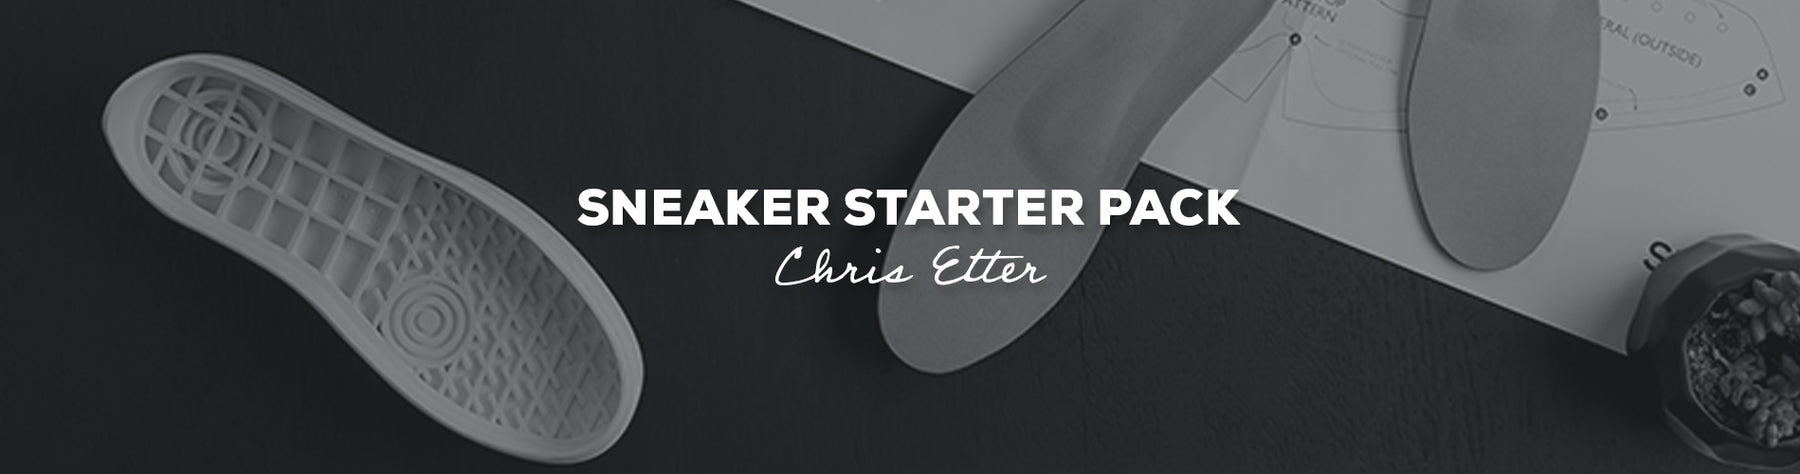 Gift Idea: Sneaker Starter Pack